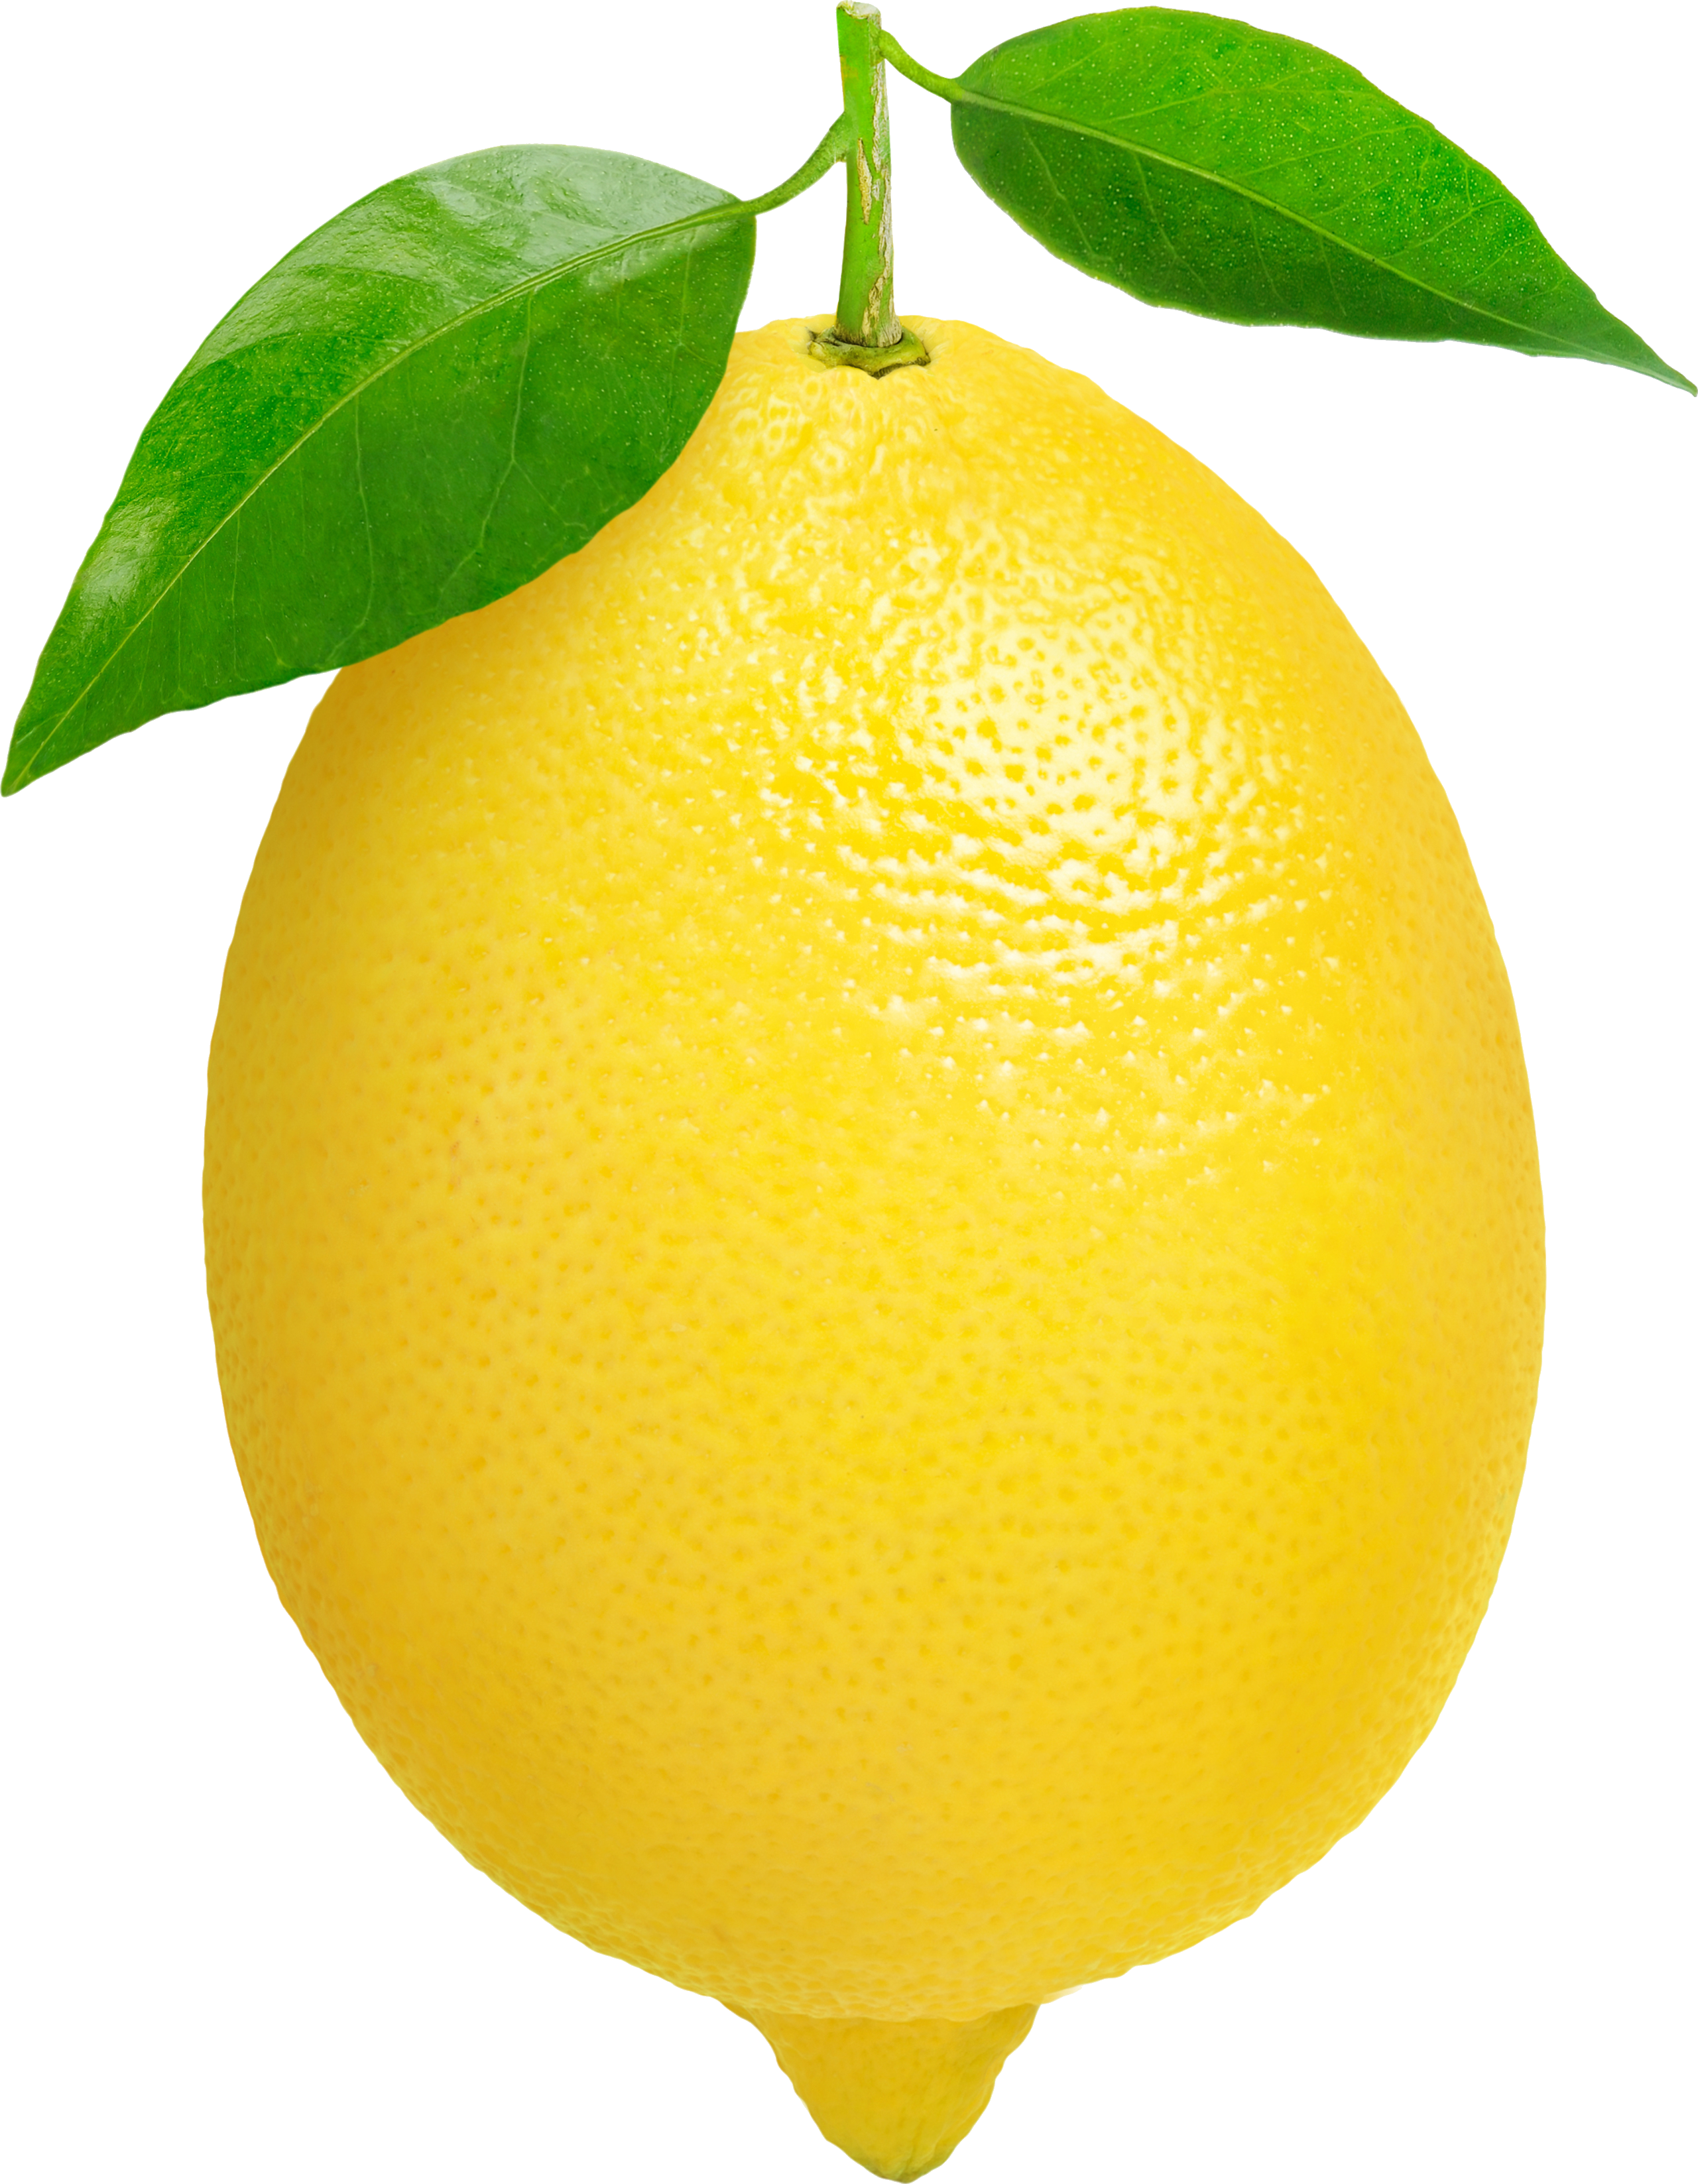 Lime clipart citrus. Lemon juice can lighten